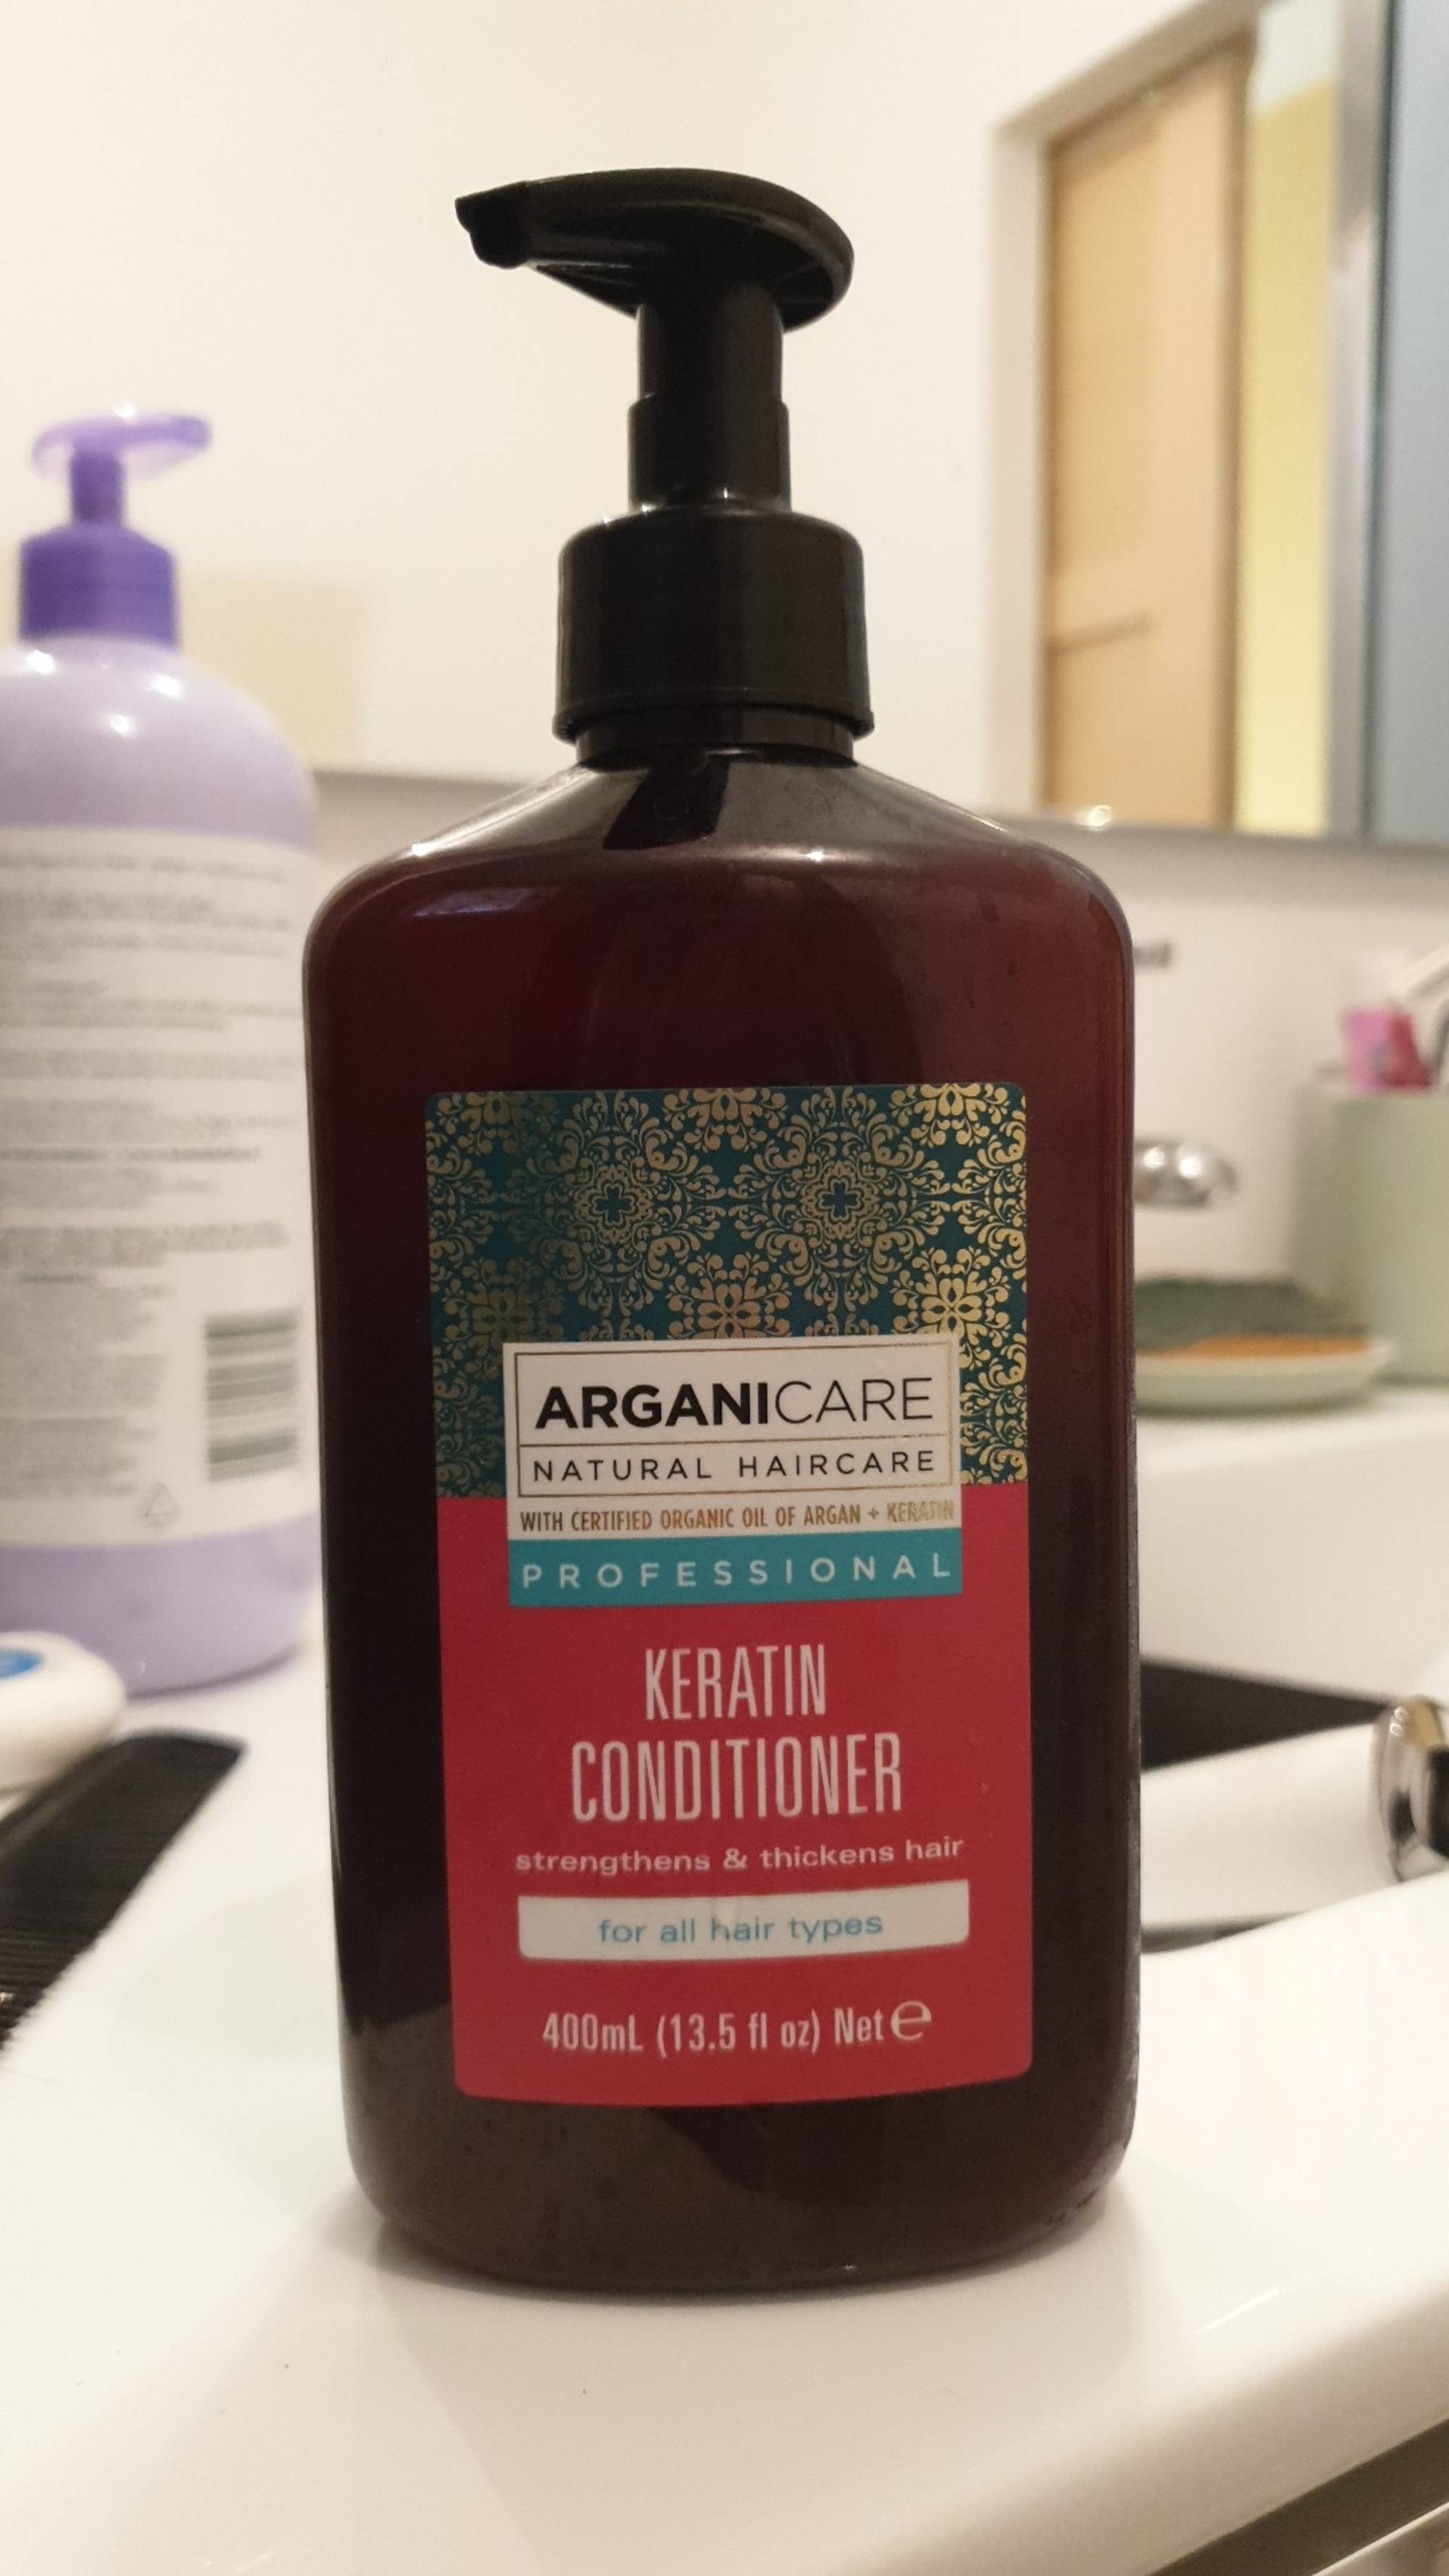 ARGANICARE - Keratin conditioner